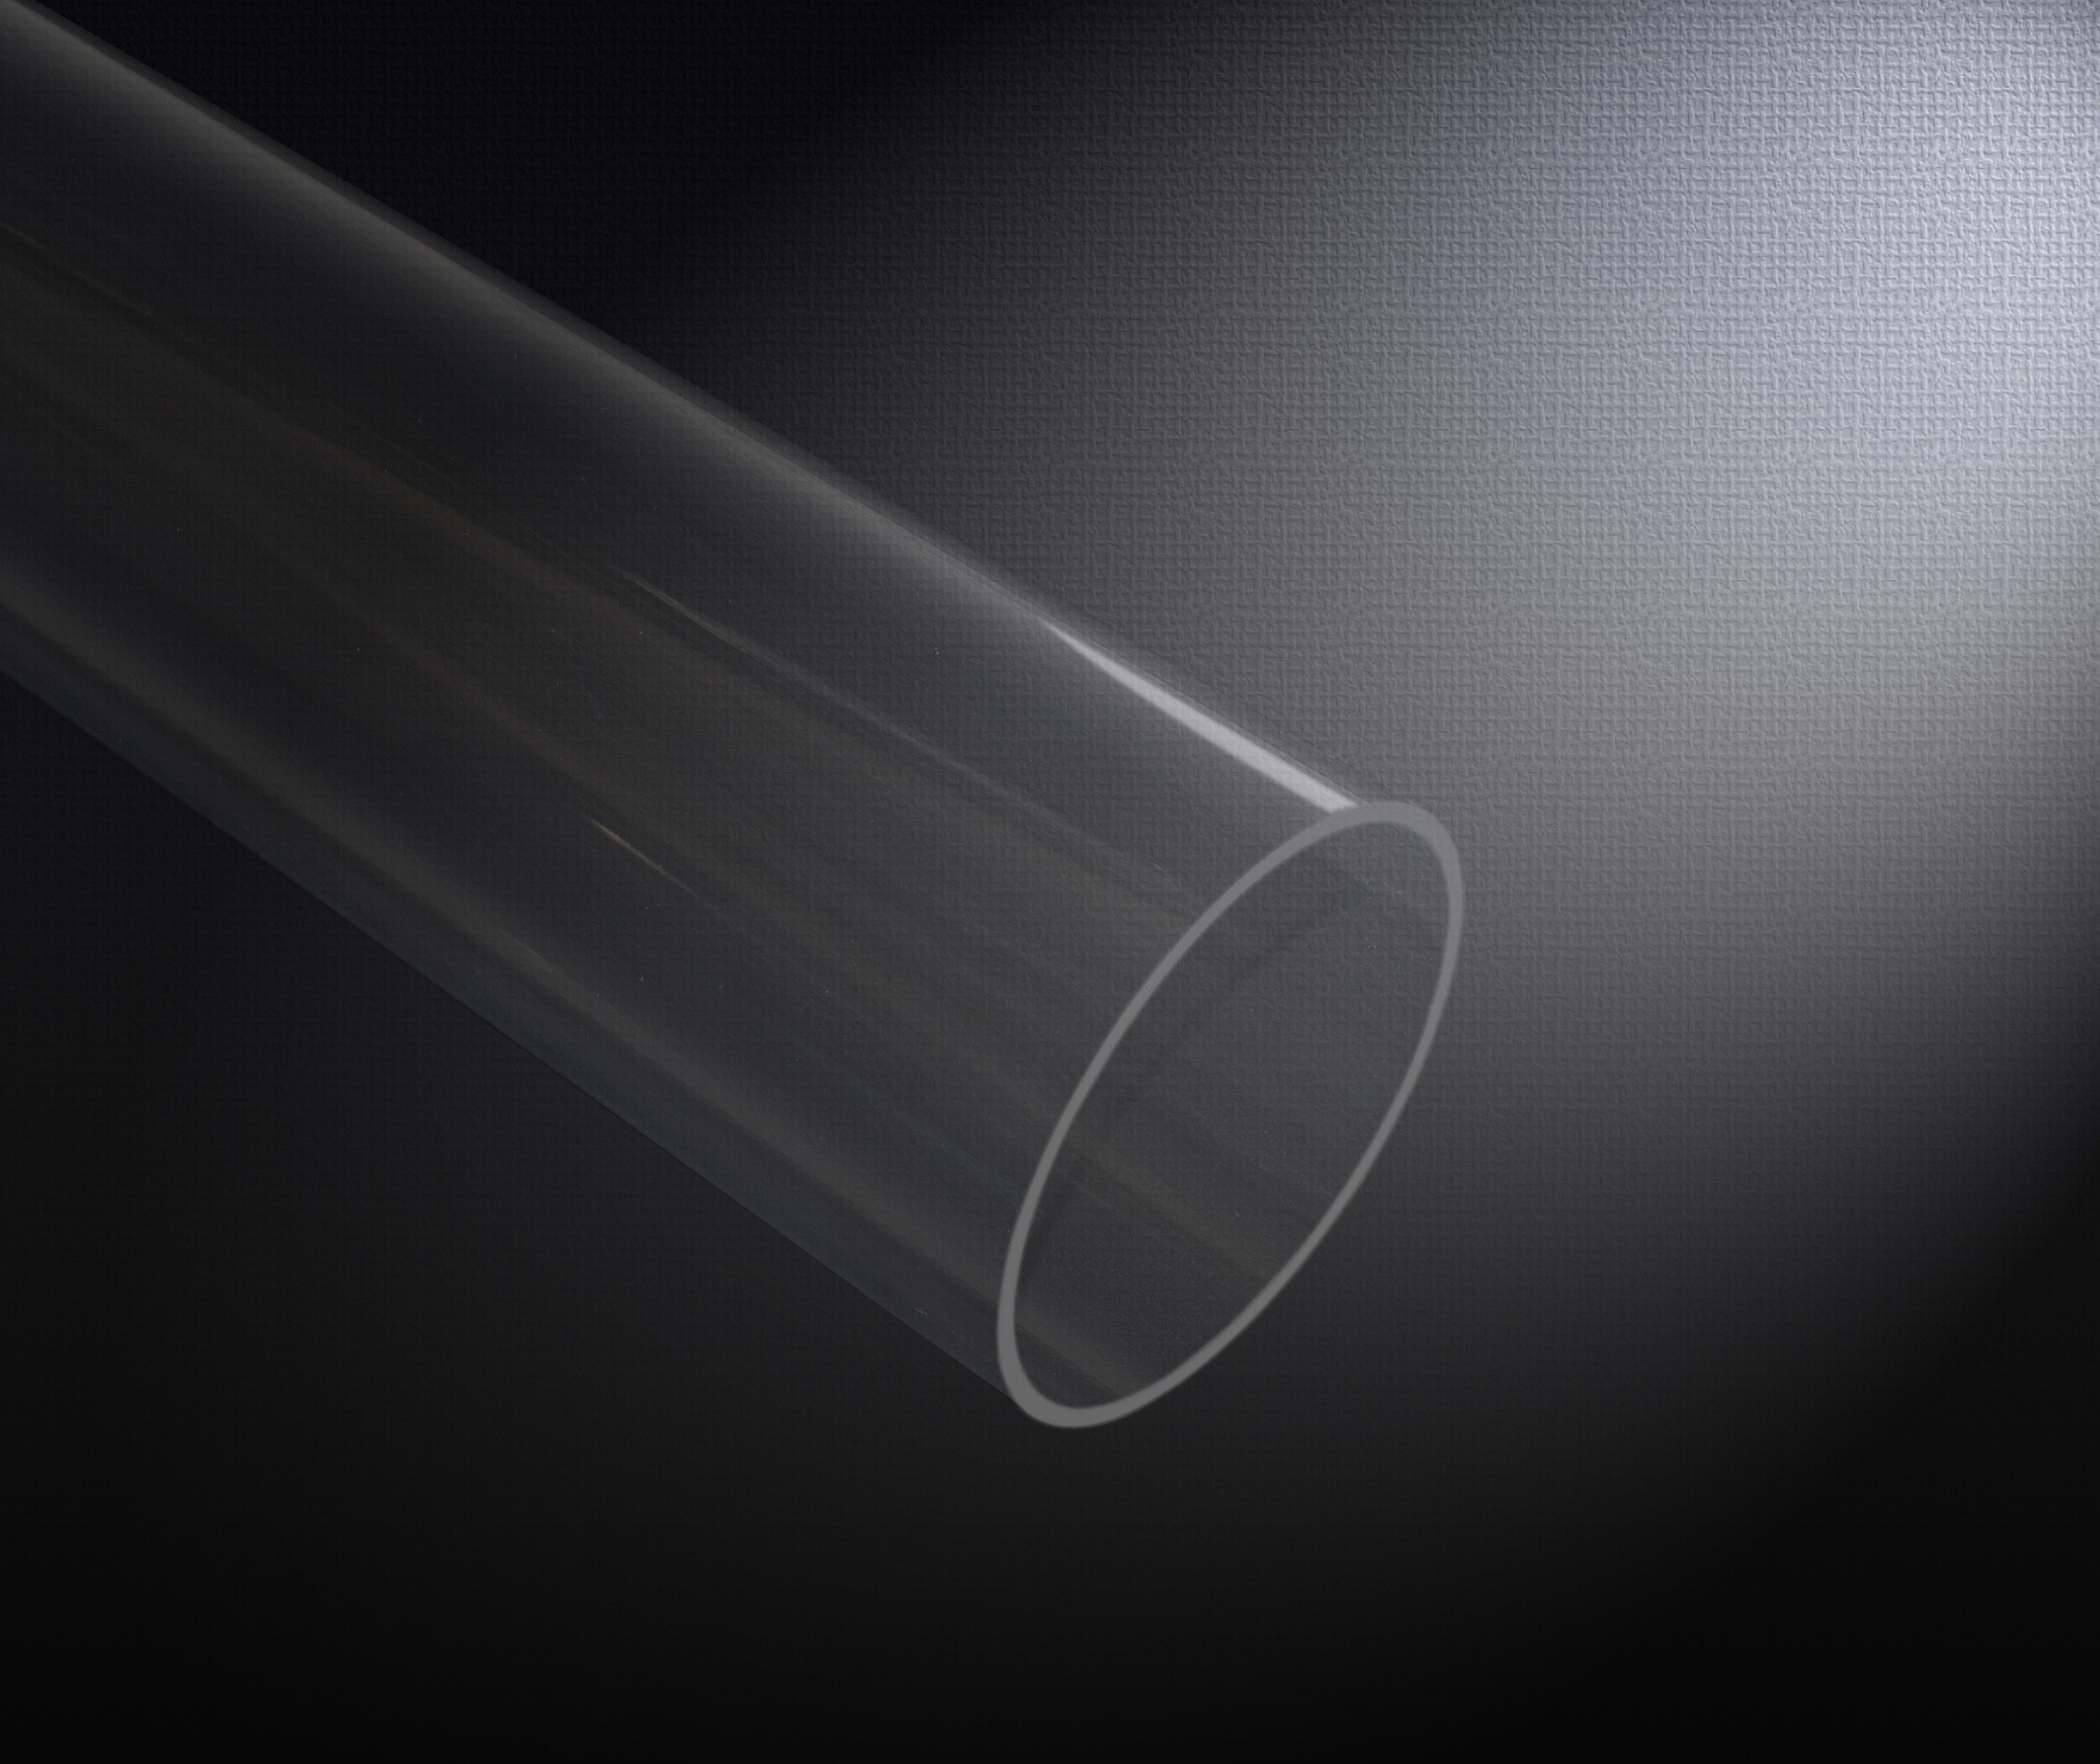 Tube transparent Ø 100 mm - 1 mètre - Tendotools